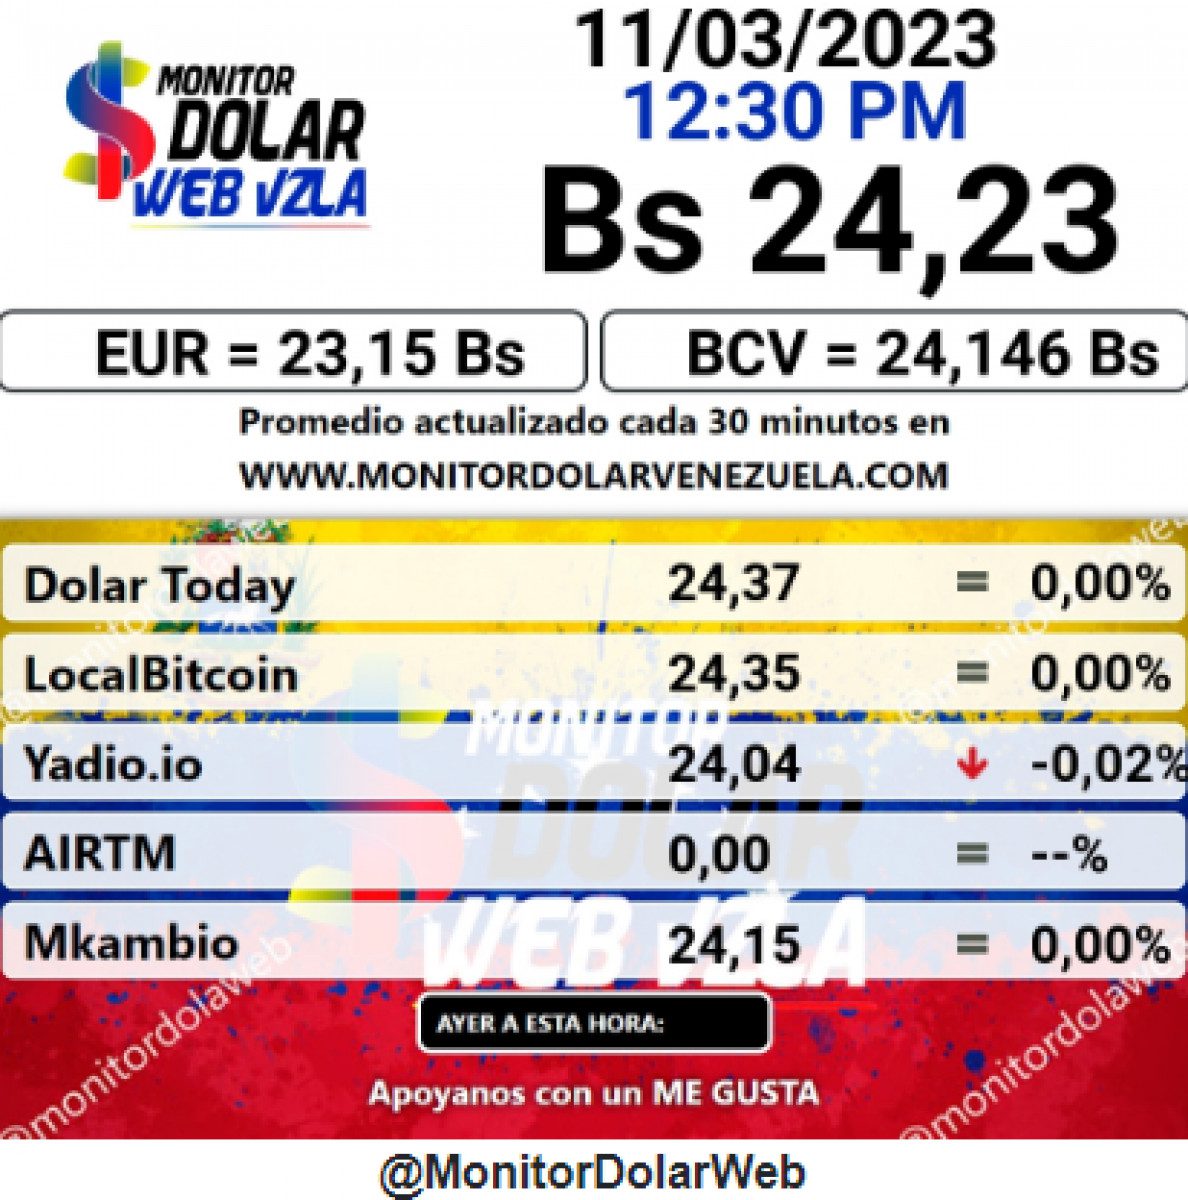 dolartoday en venezuela precio del dolar sabado 11 de marzo de 2023 laverdaddemonagas.com monitor8